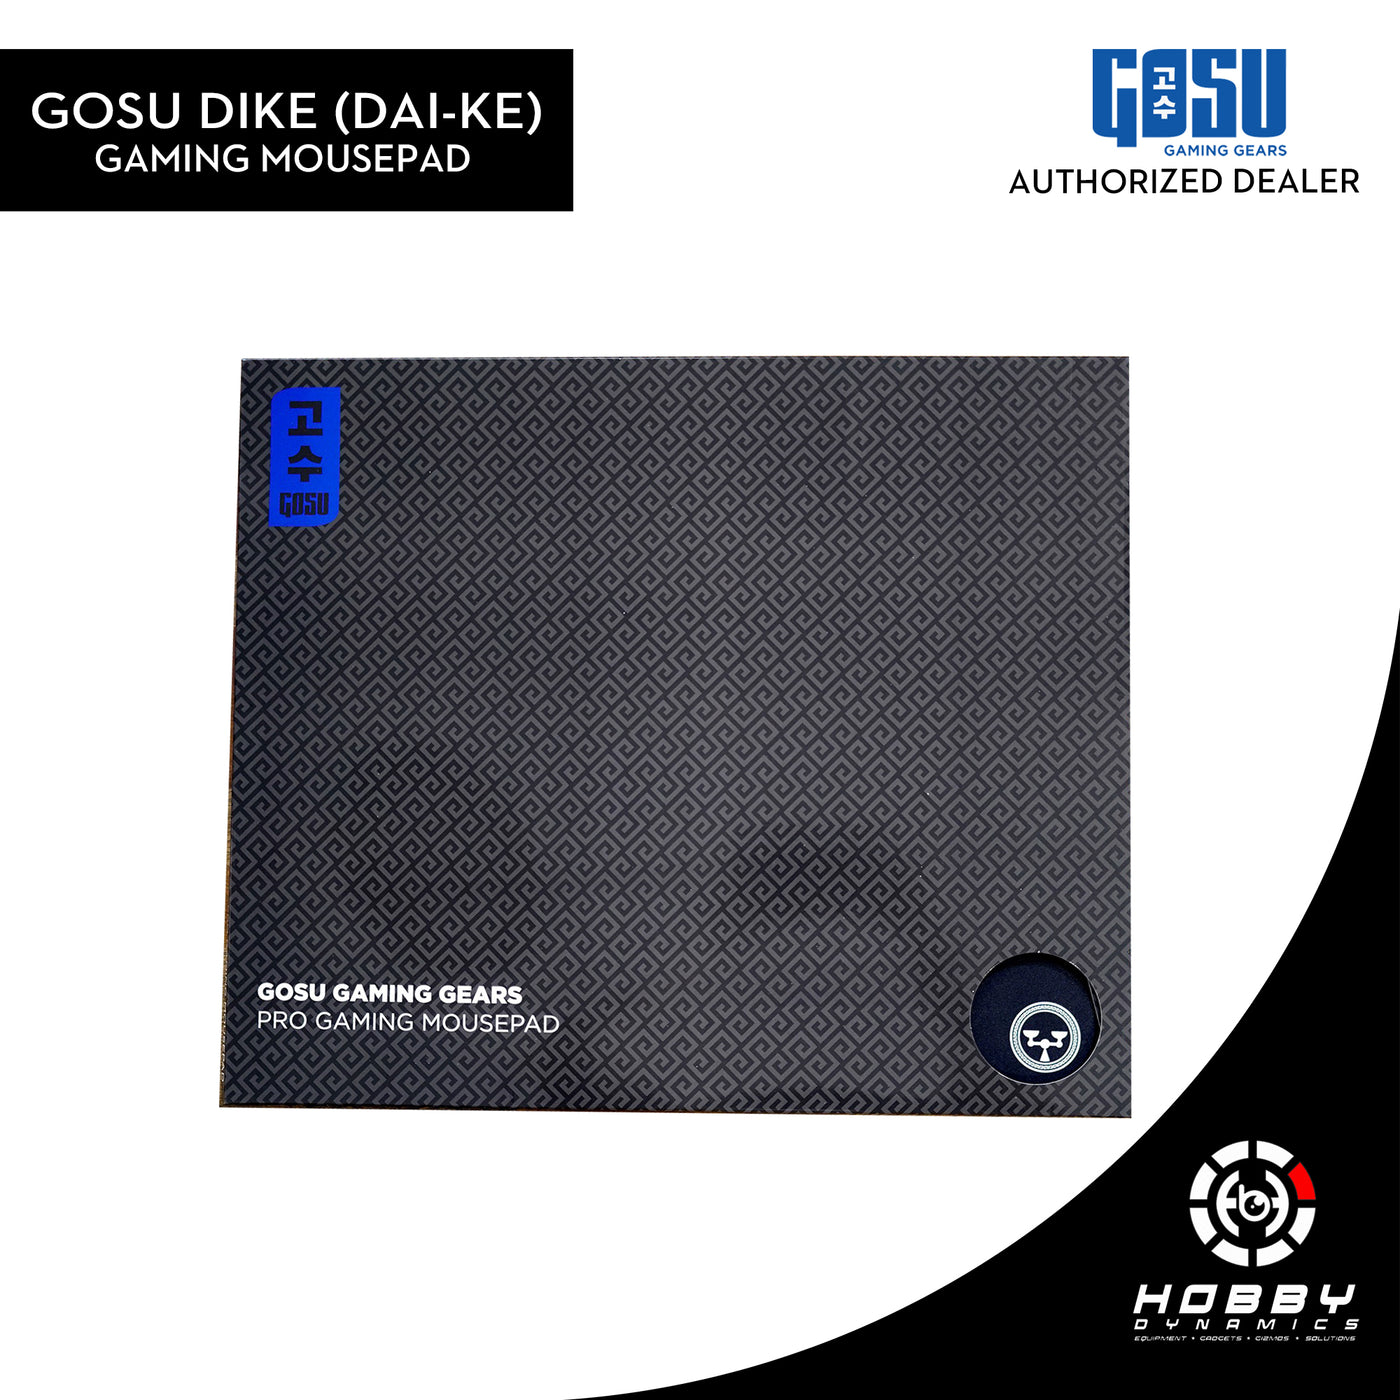 Gosu DIKE (dai-ke) Gaming Mousepad